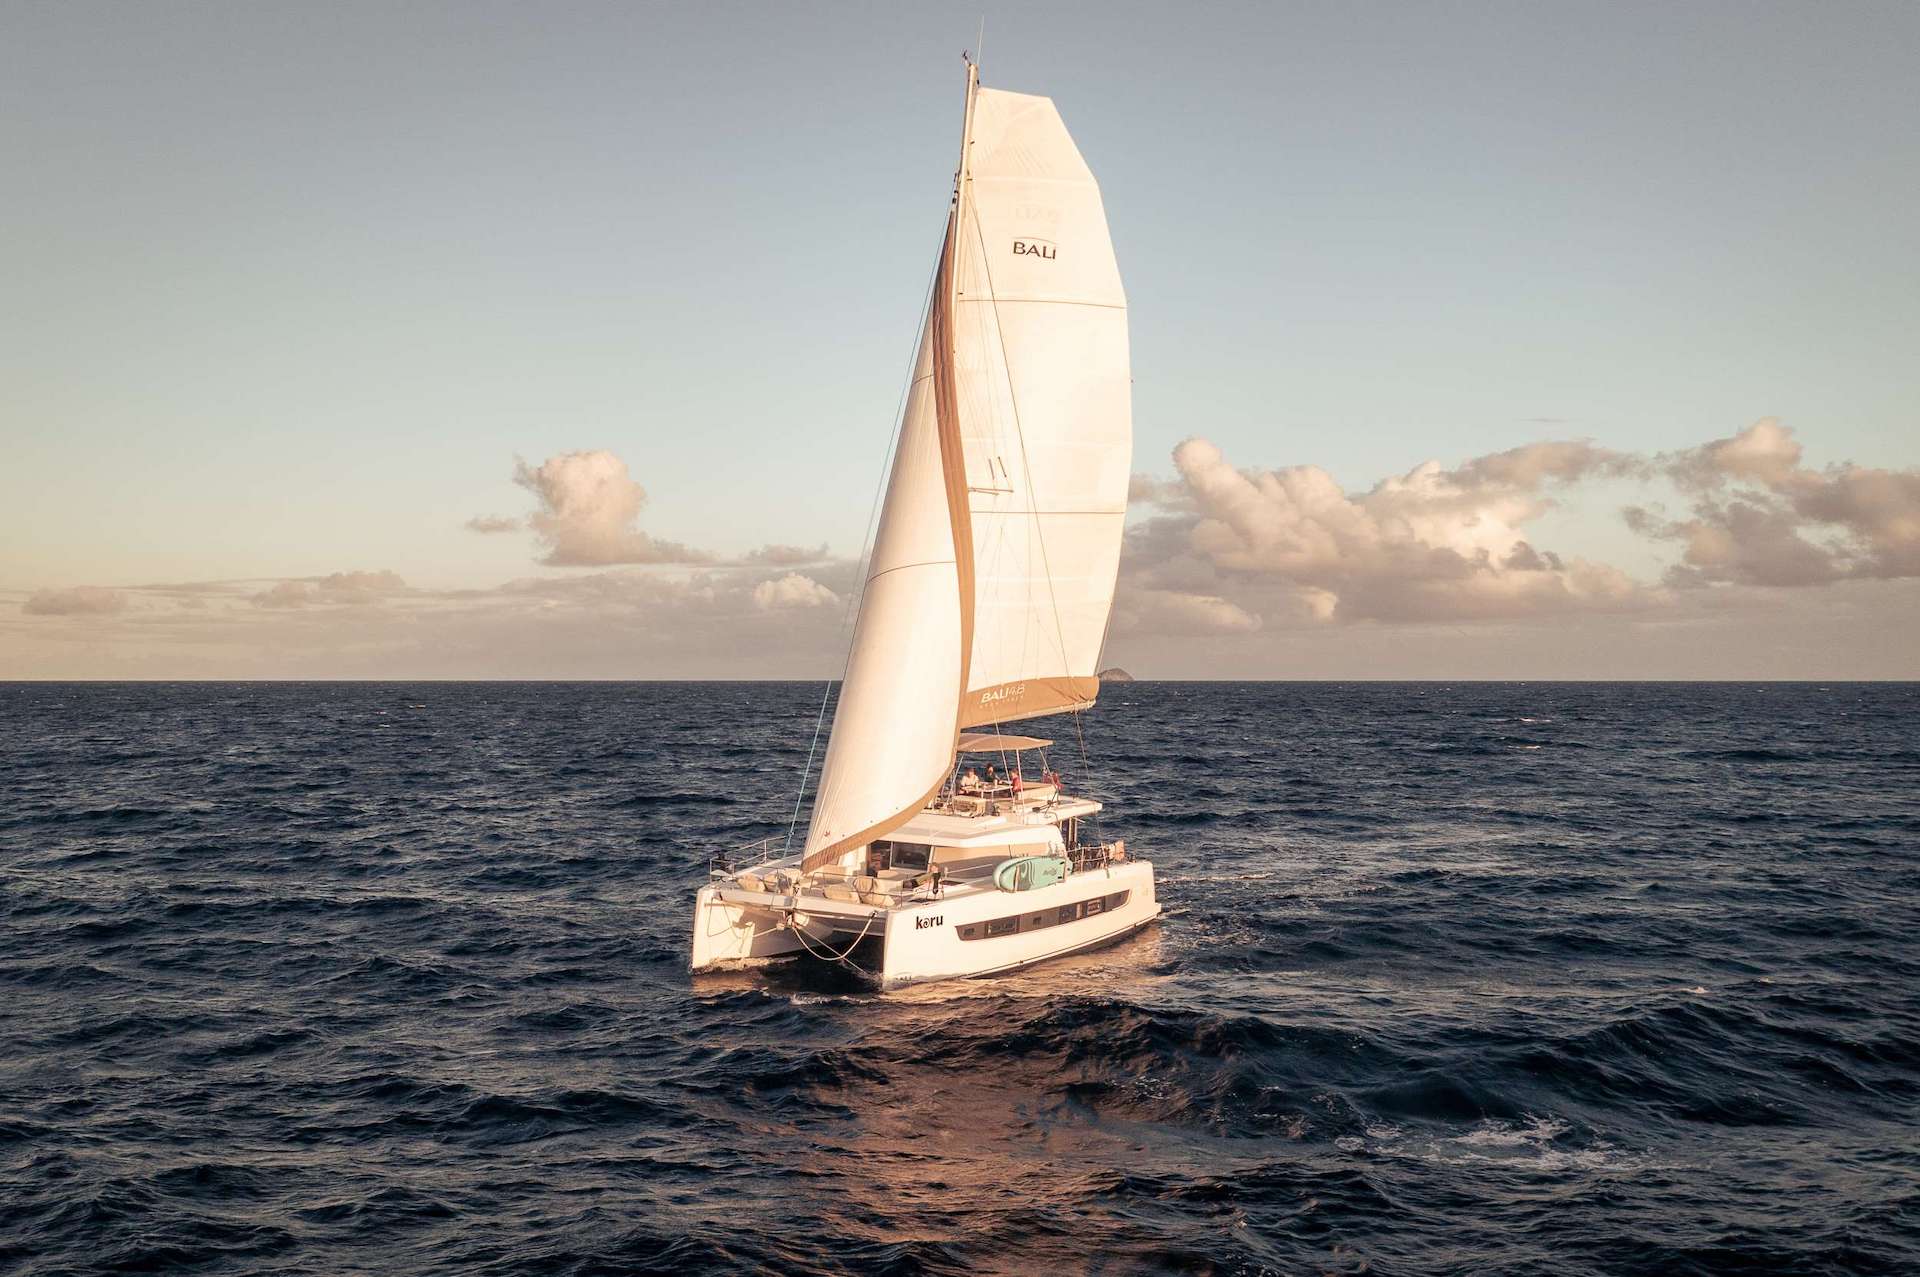 Caribbean yacht charter Koru